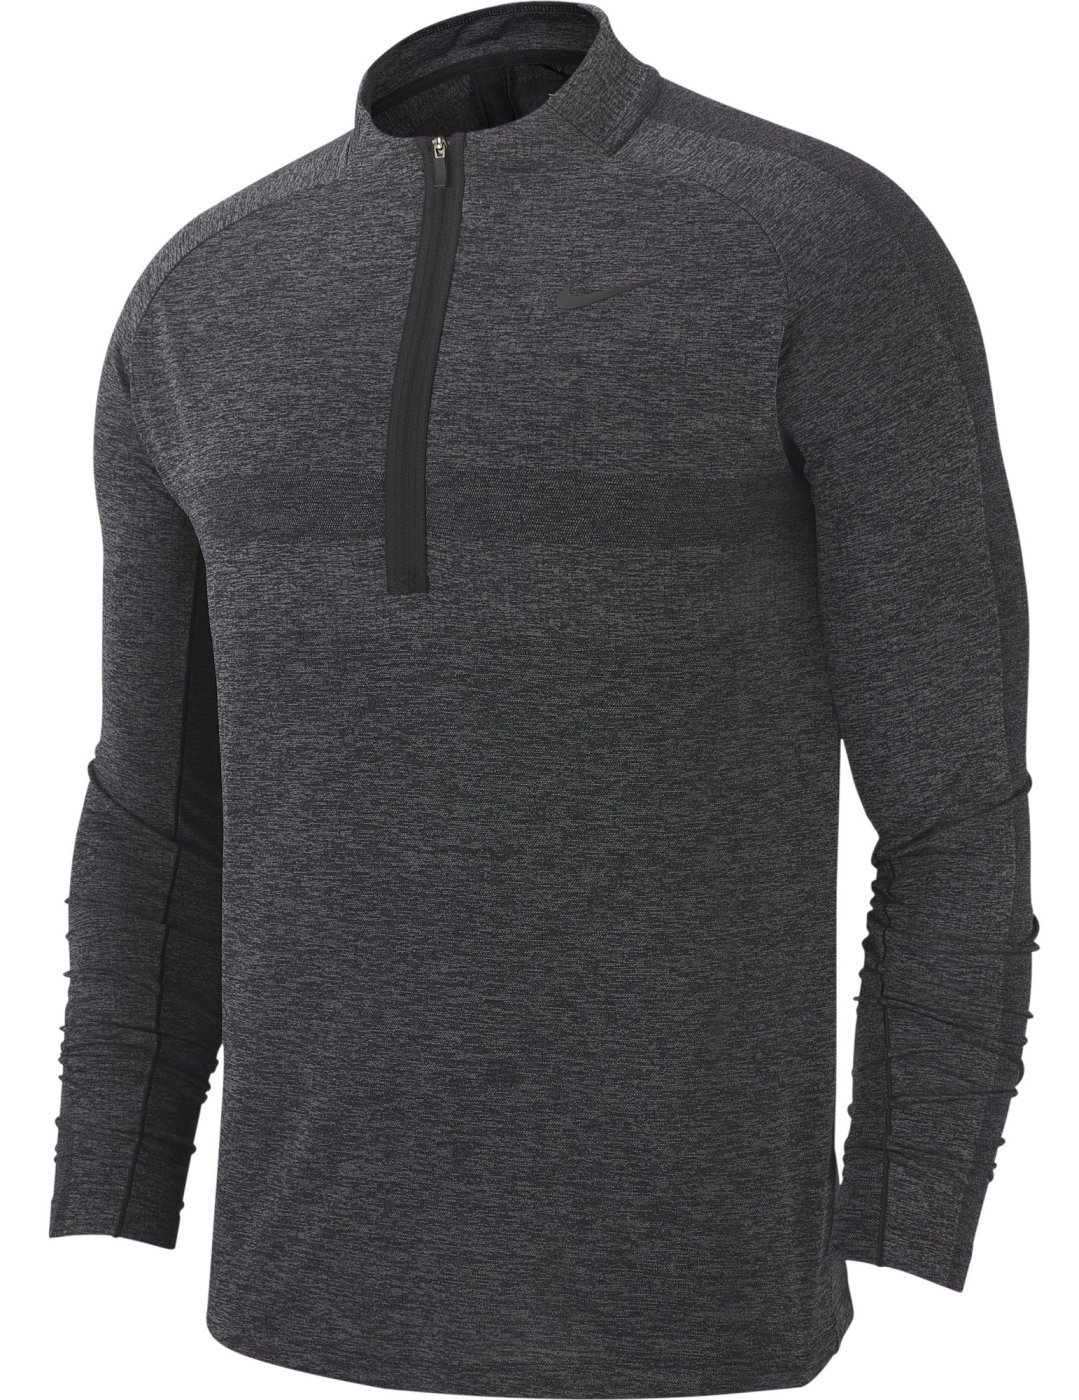 Sweat à capuche/Pull Nike Dry Knit Statement 1/2 Zip Mens Sweater Black/Dark Grey L